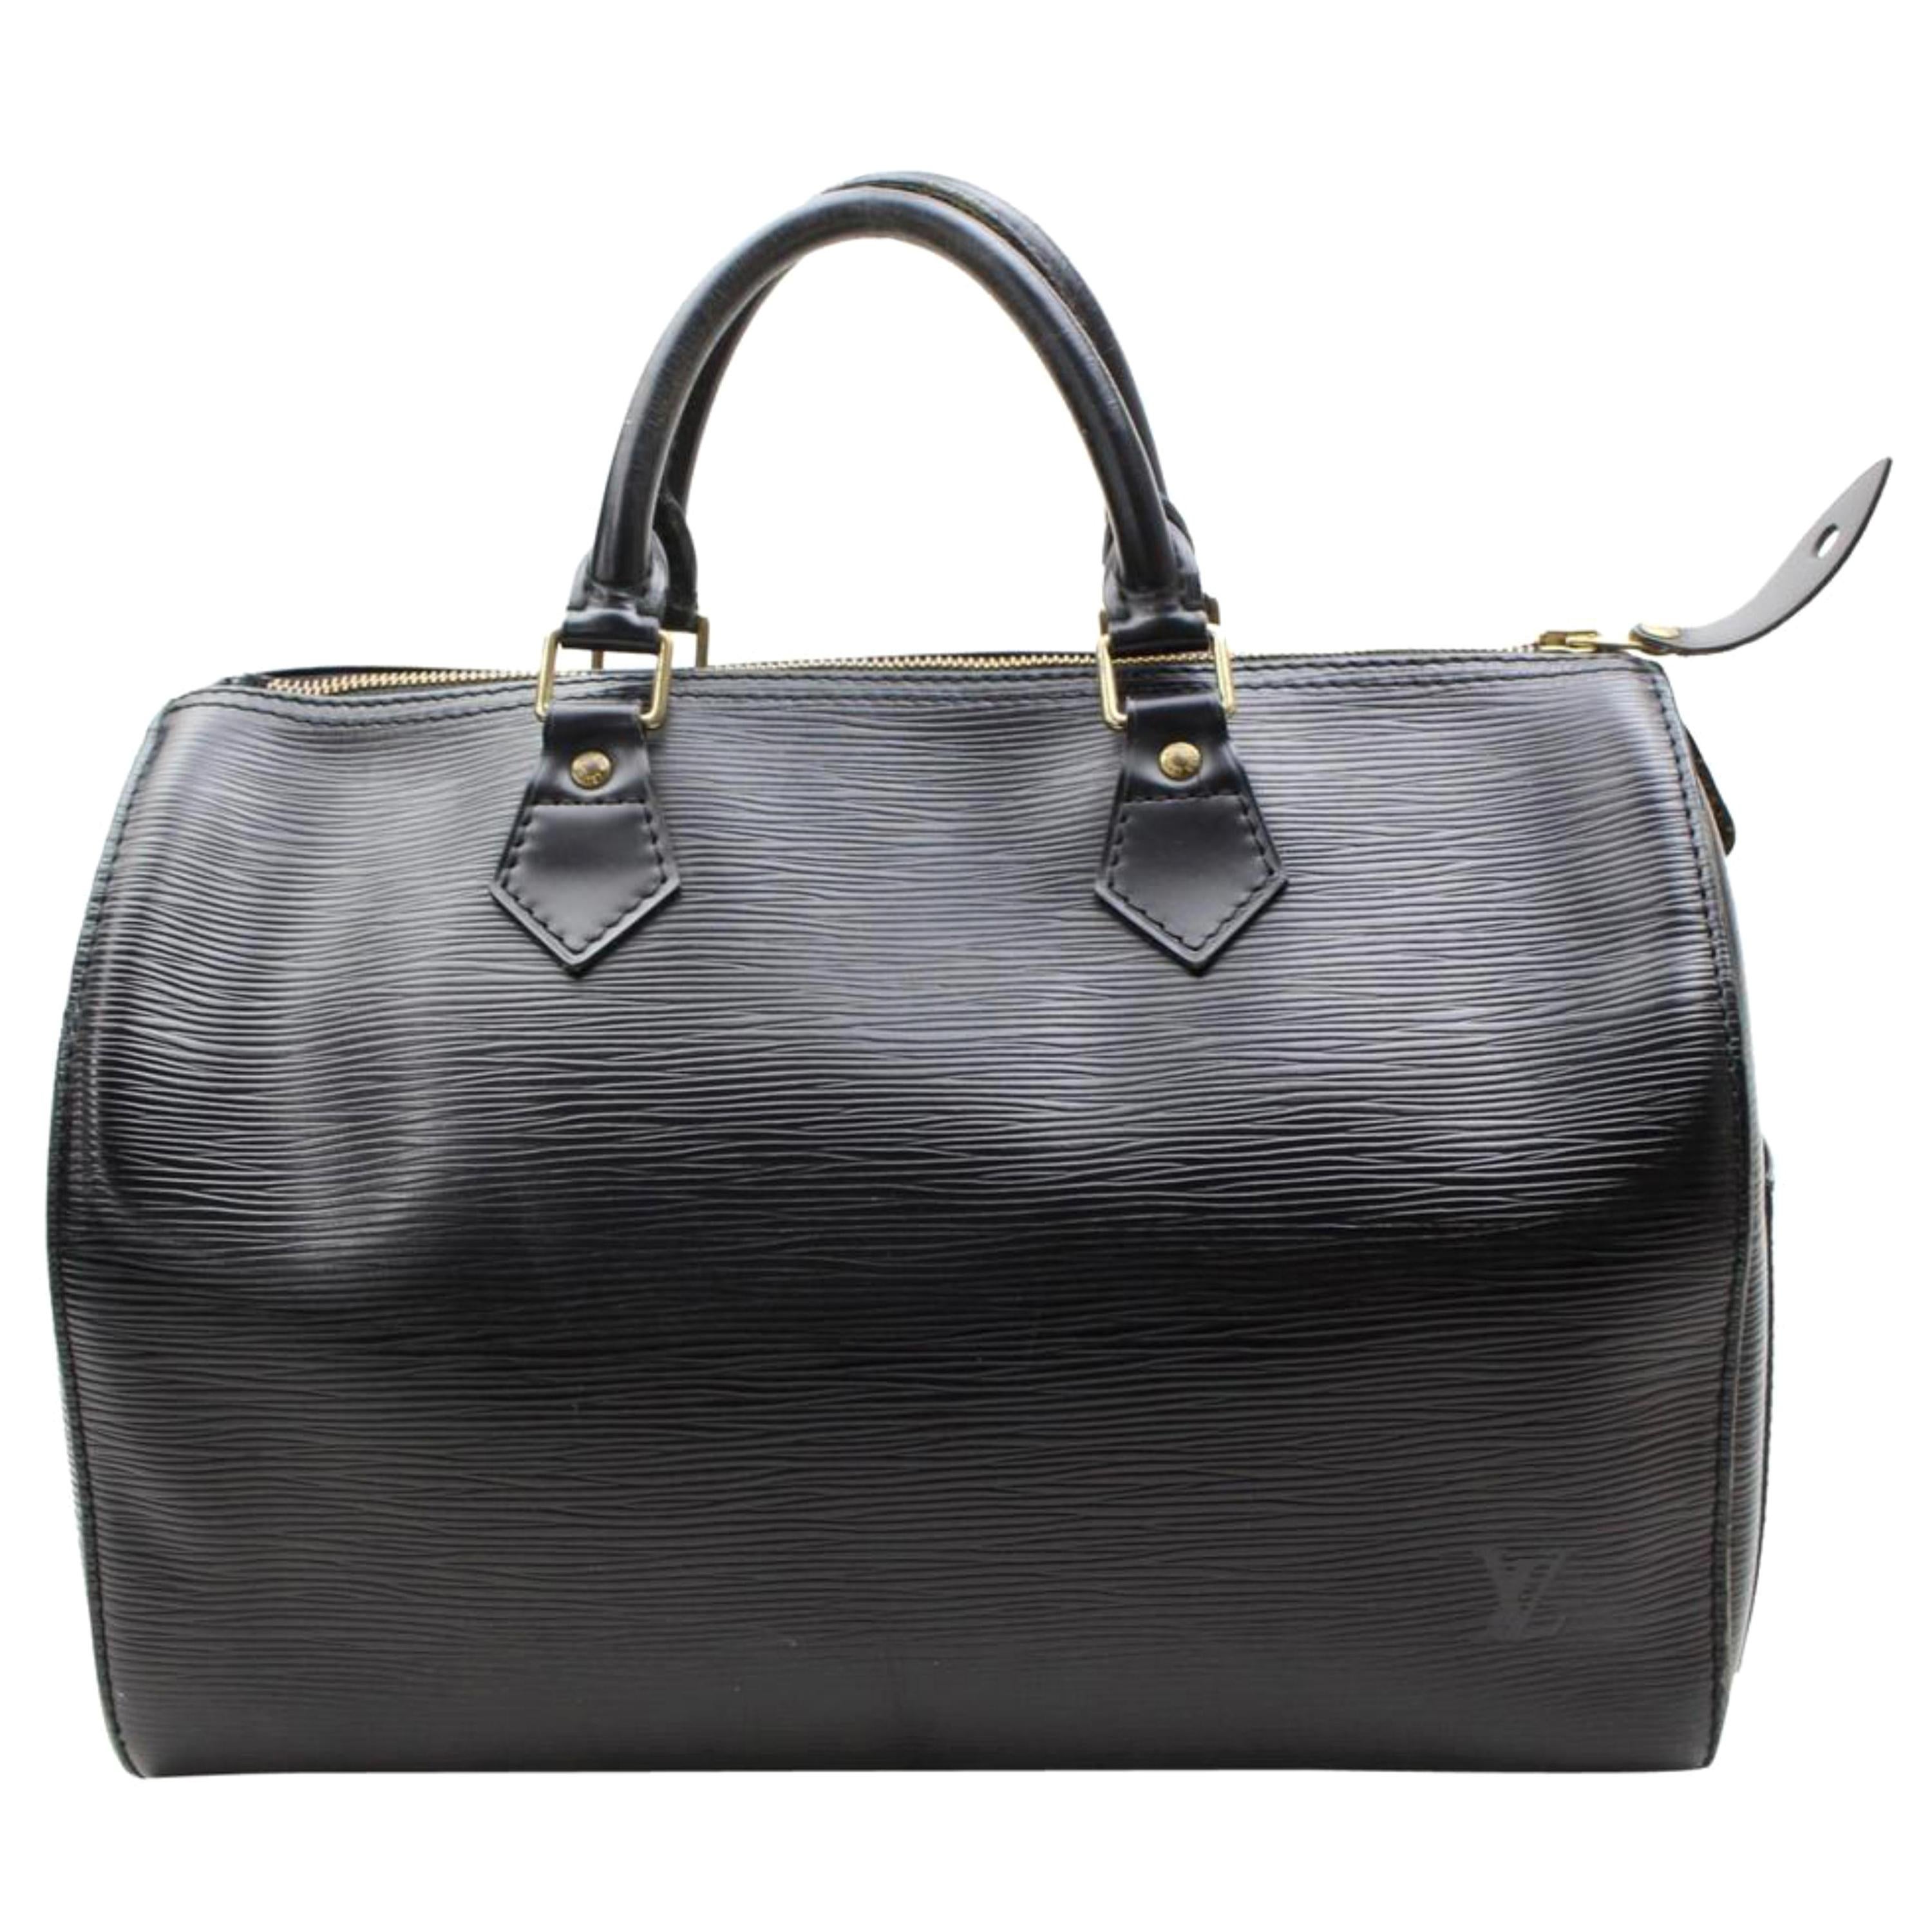 Louis Vuitton Speedy Epi Noir 30 867755 Black Leather Satchel For Sale